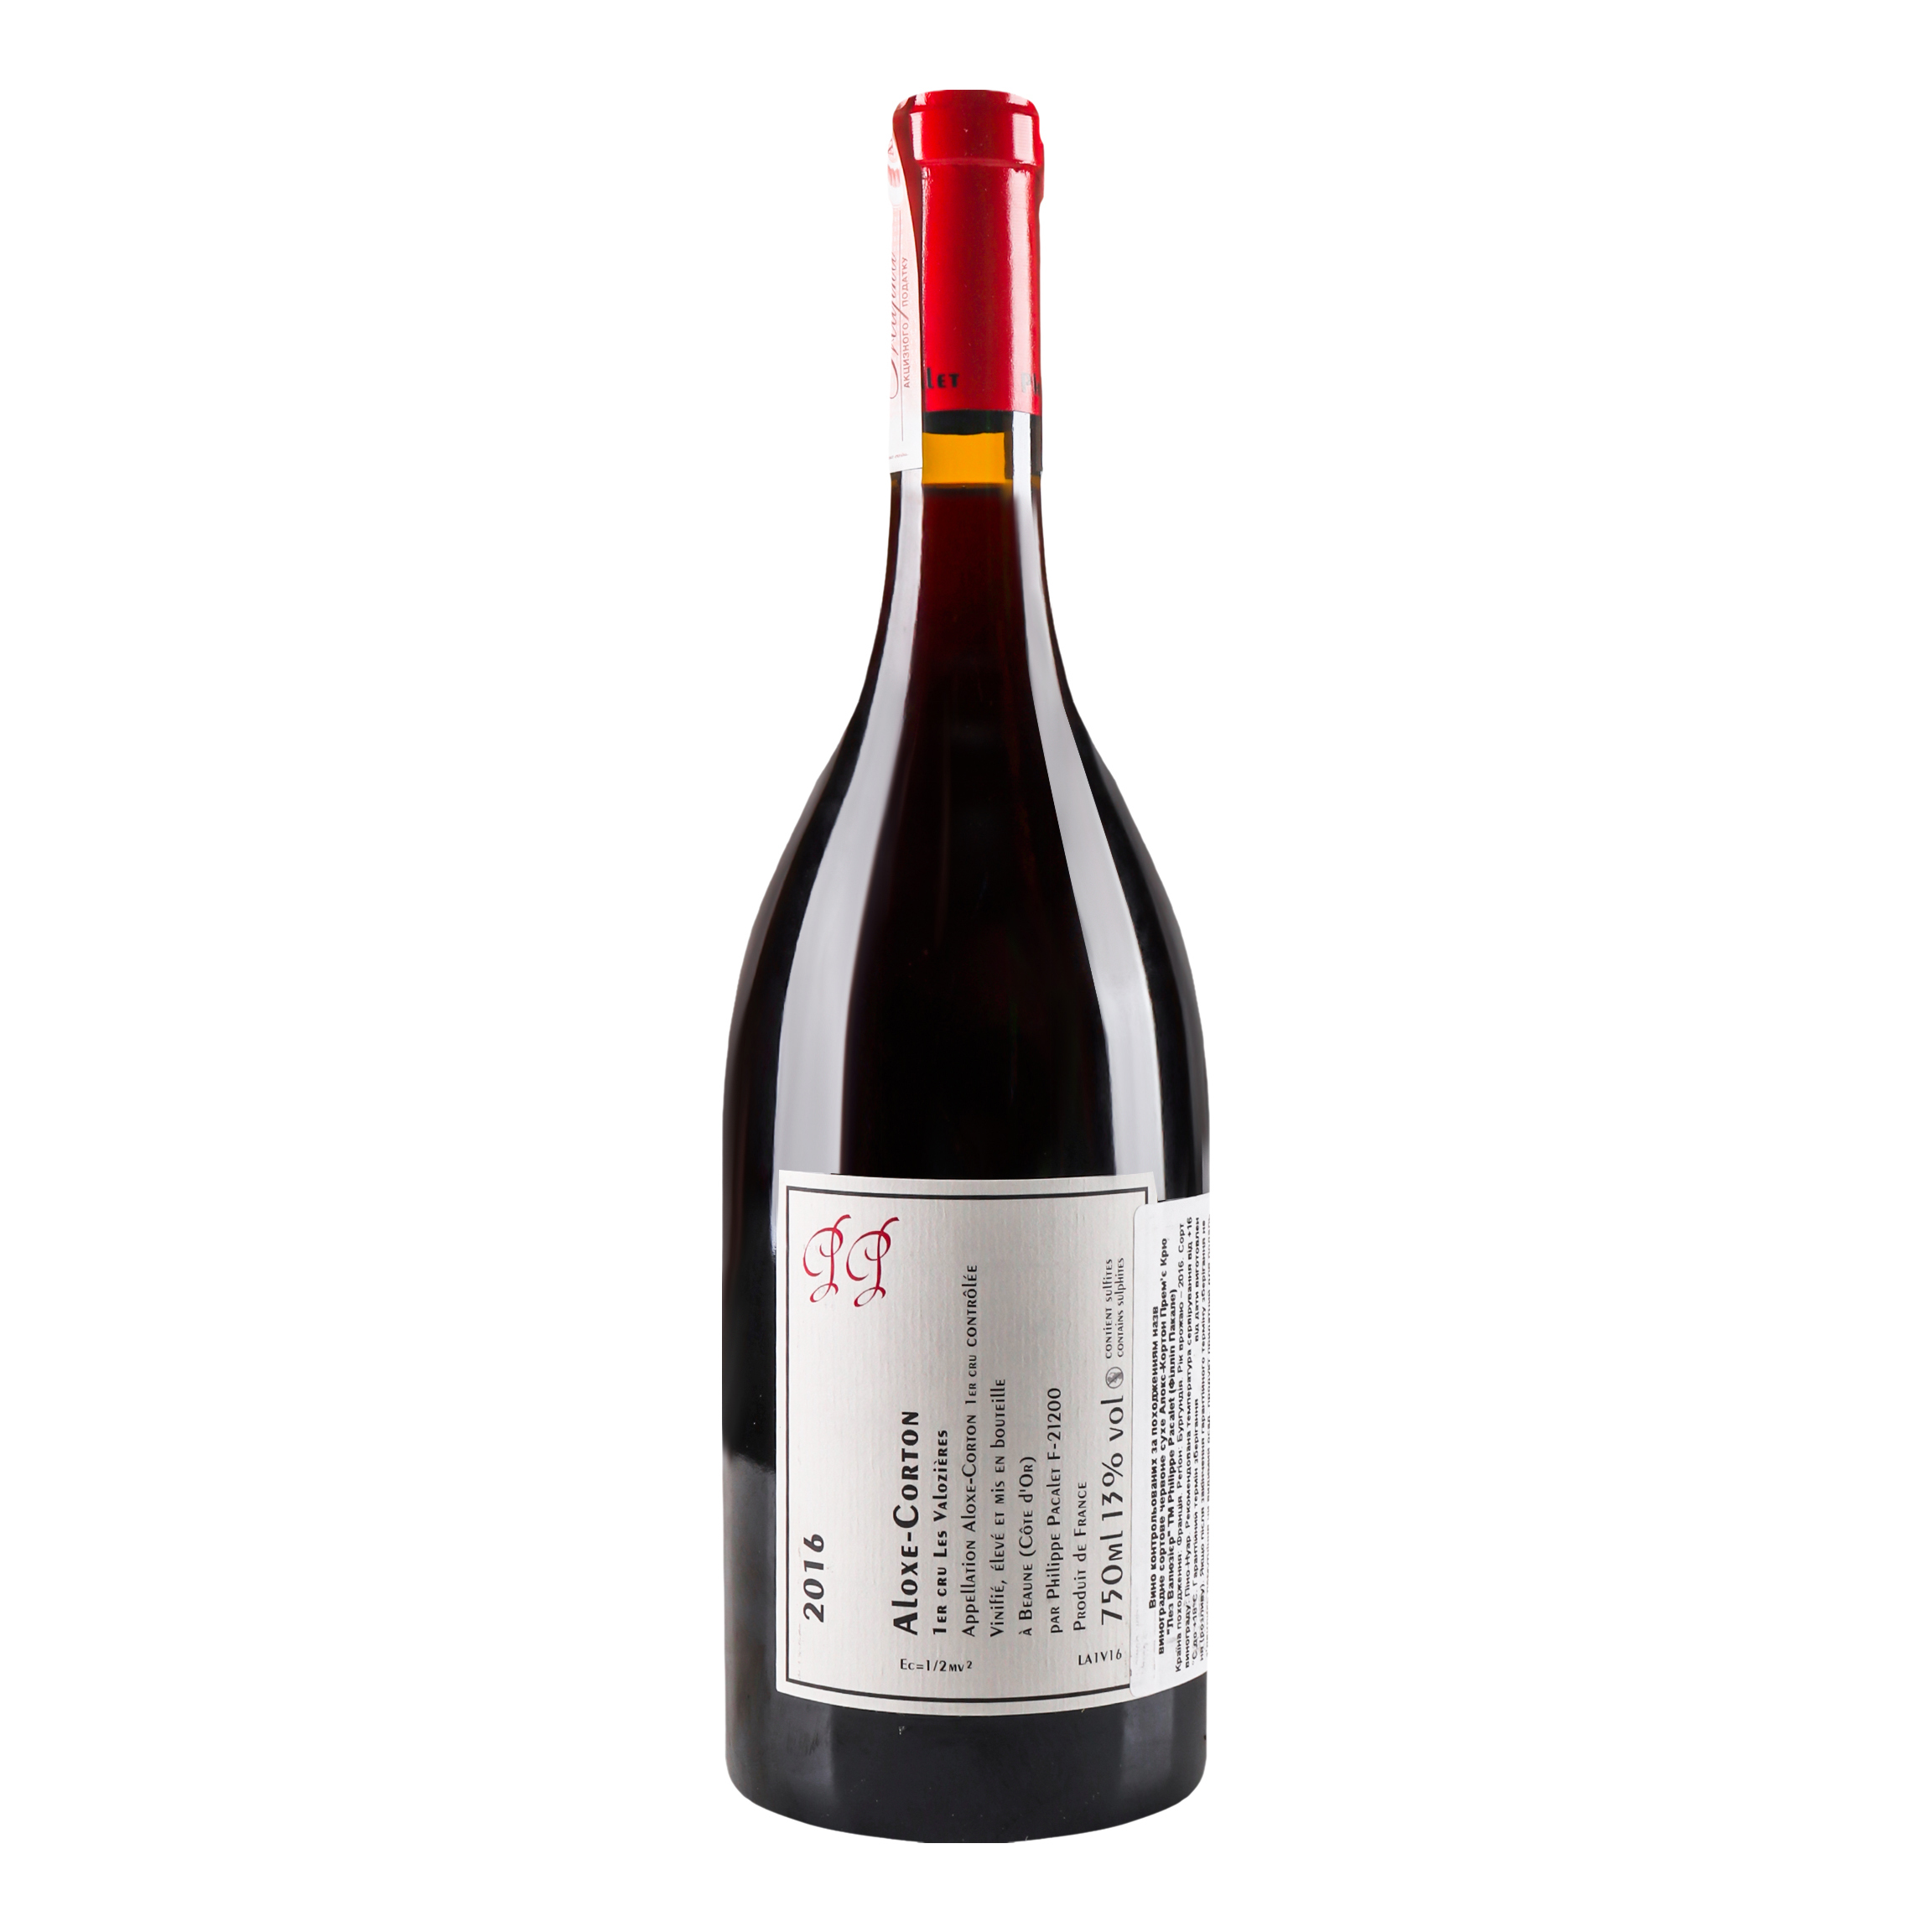 Вино Philippe Pacalet Aloxe Corton Premier Сru Les Valozieres 2016 AOC/AOP, 13%, 0,75 л (801593) - фото 2